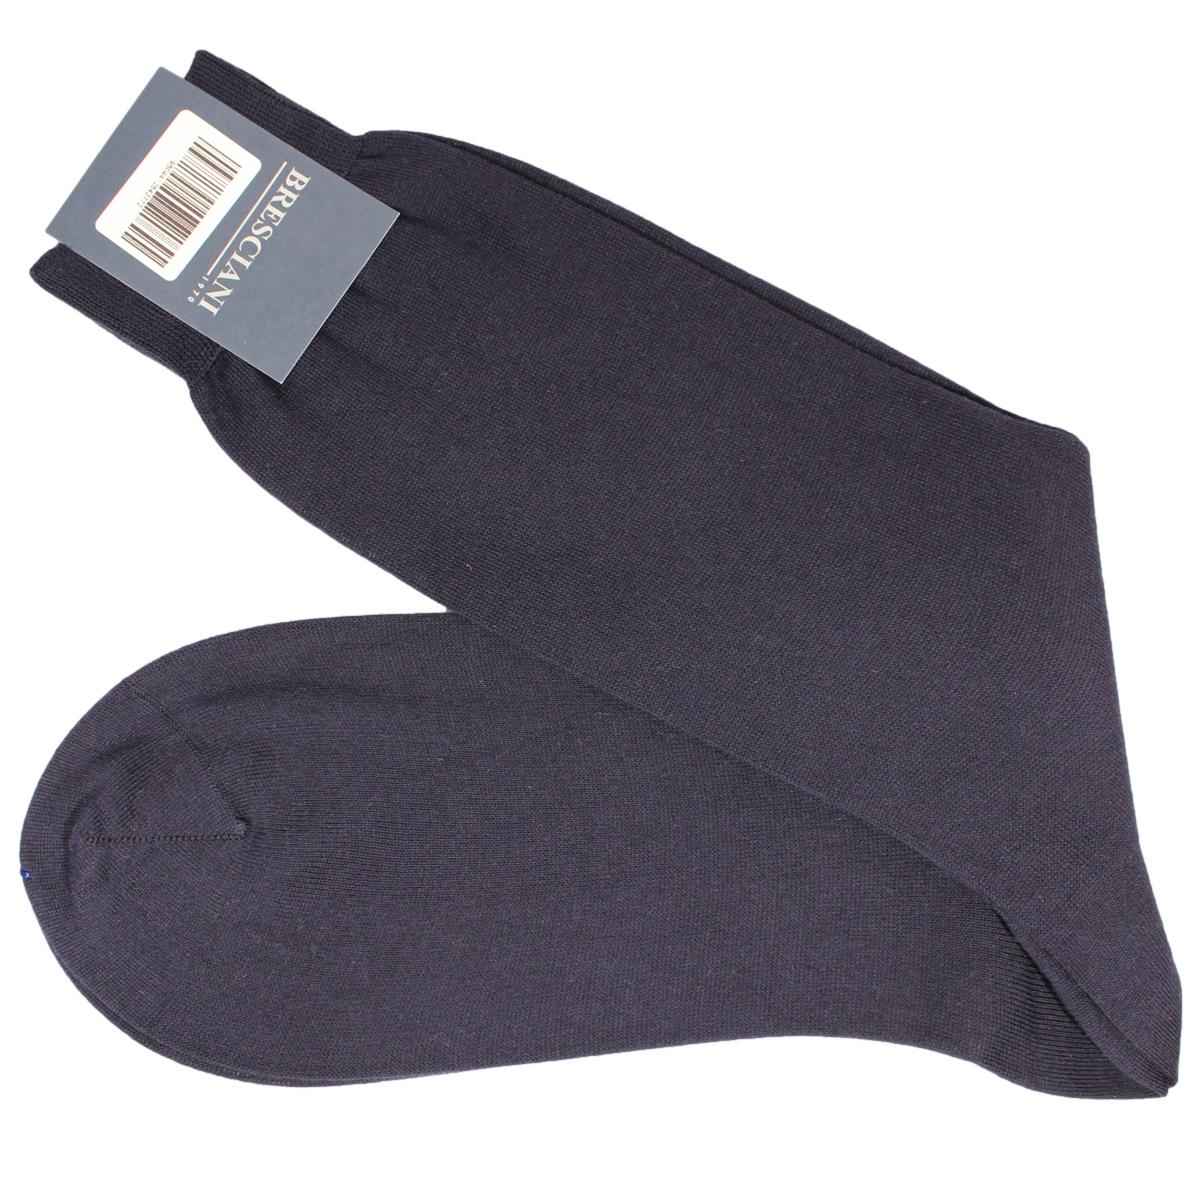 Sea Island Cotton Socks - Men's